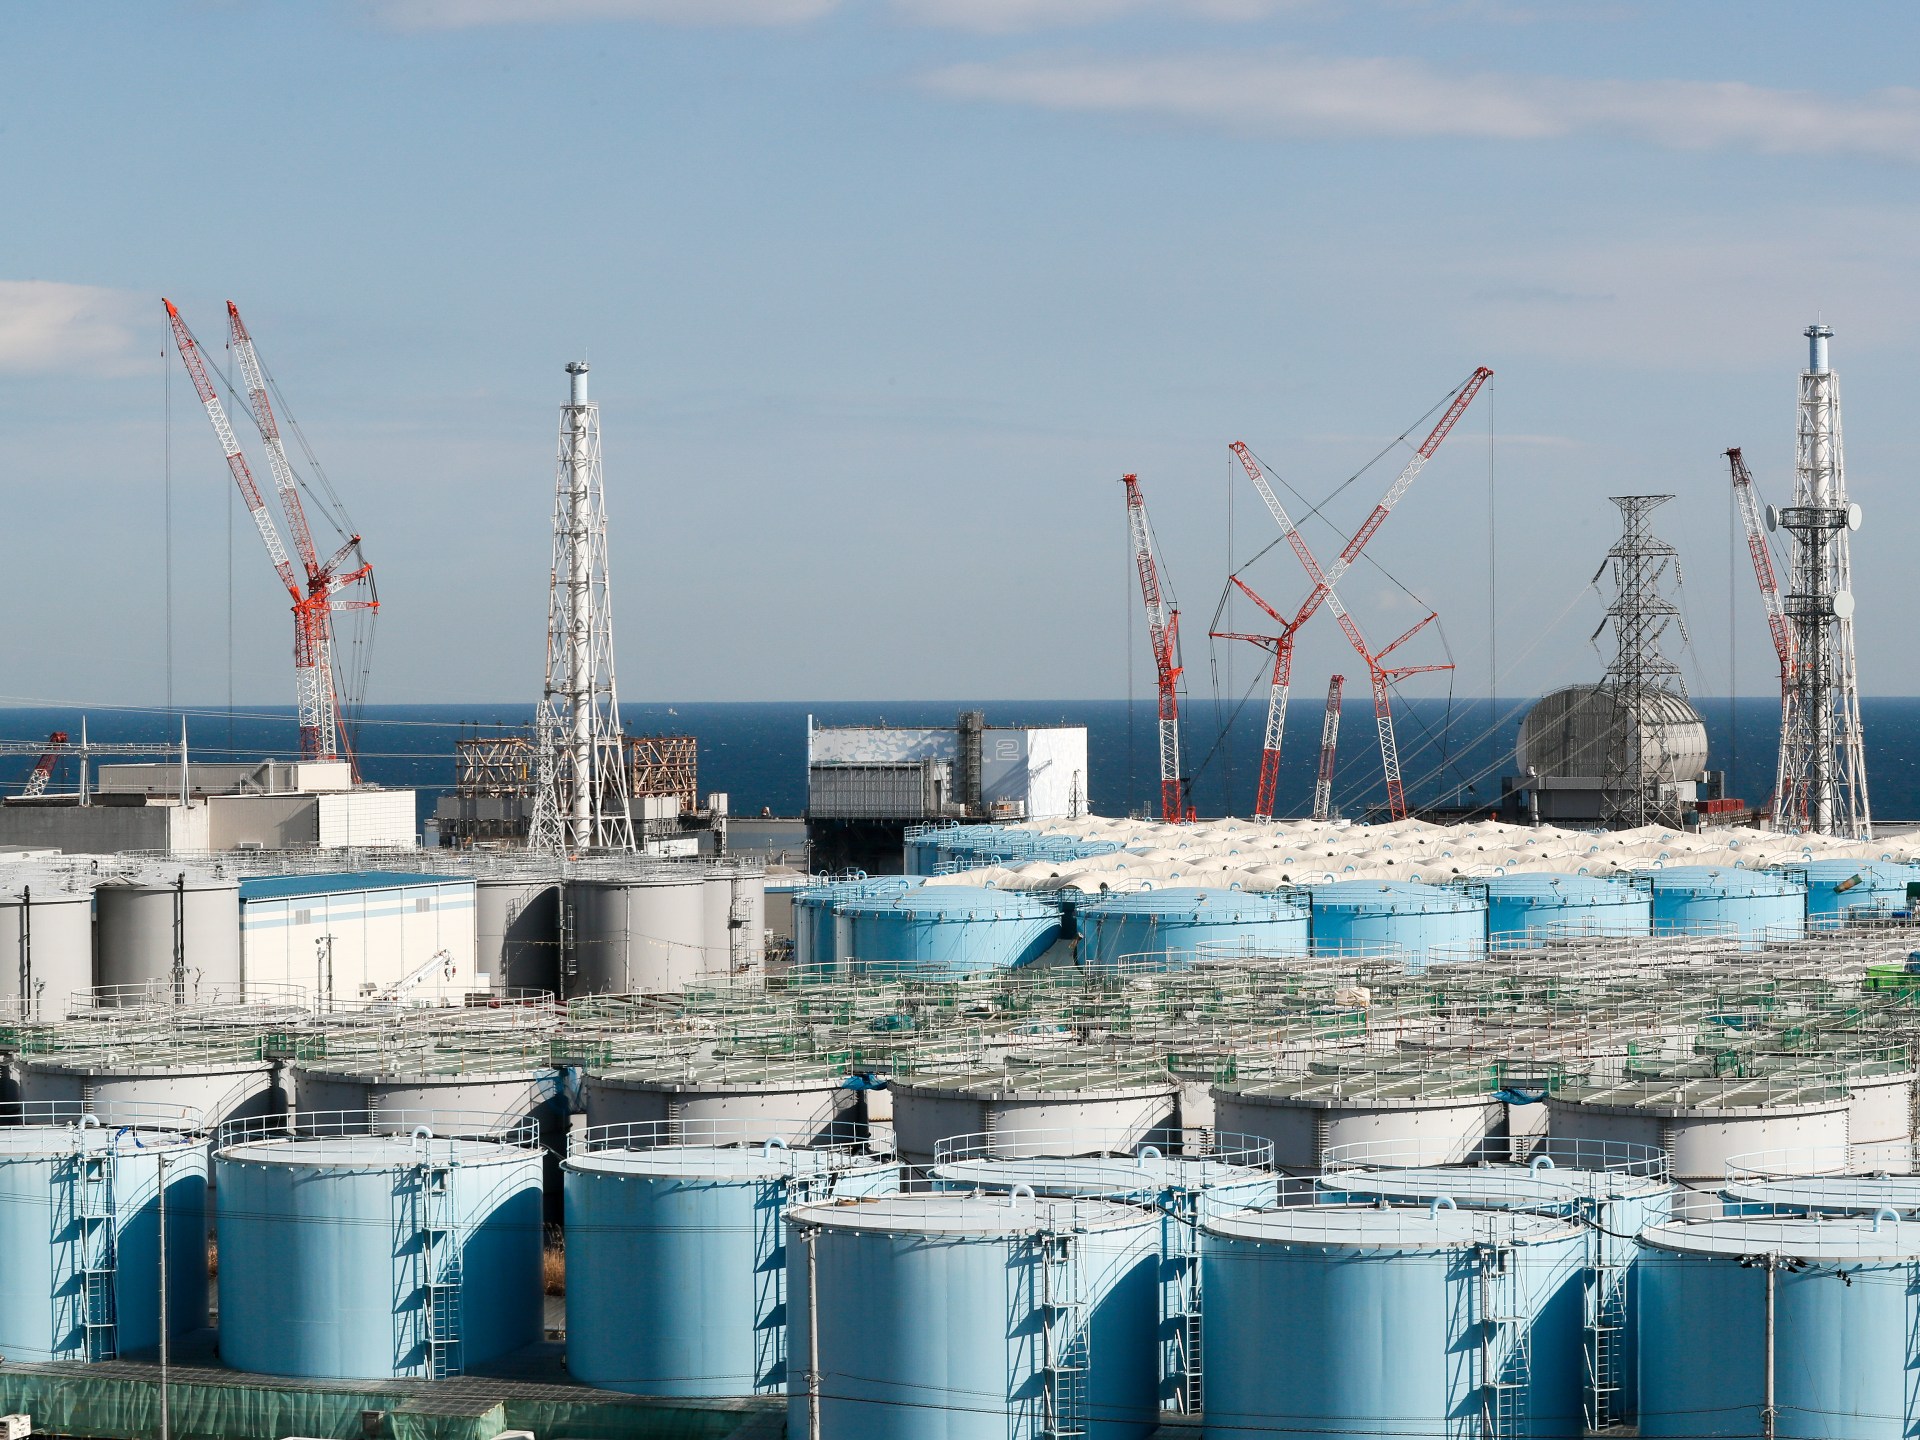 Le Japon s’apprête à prendre une décision sur le rejet d’eau à Fukushima mardi |  Nouvelles